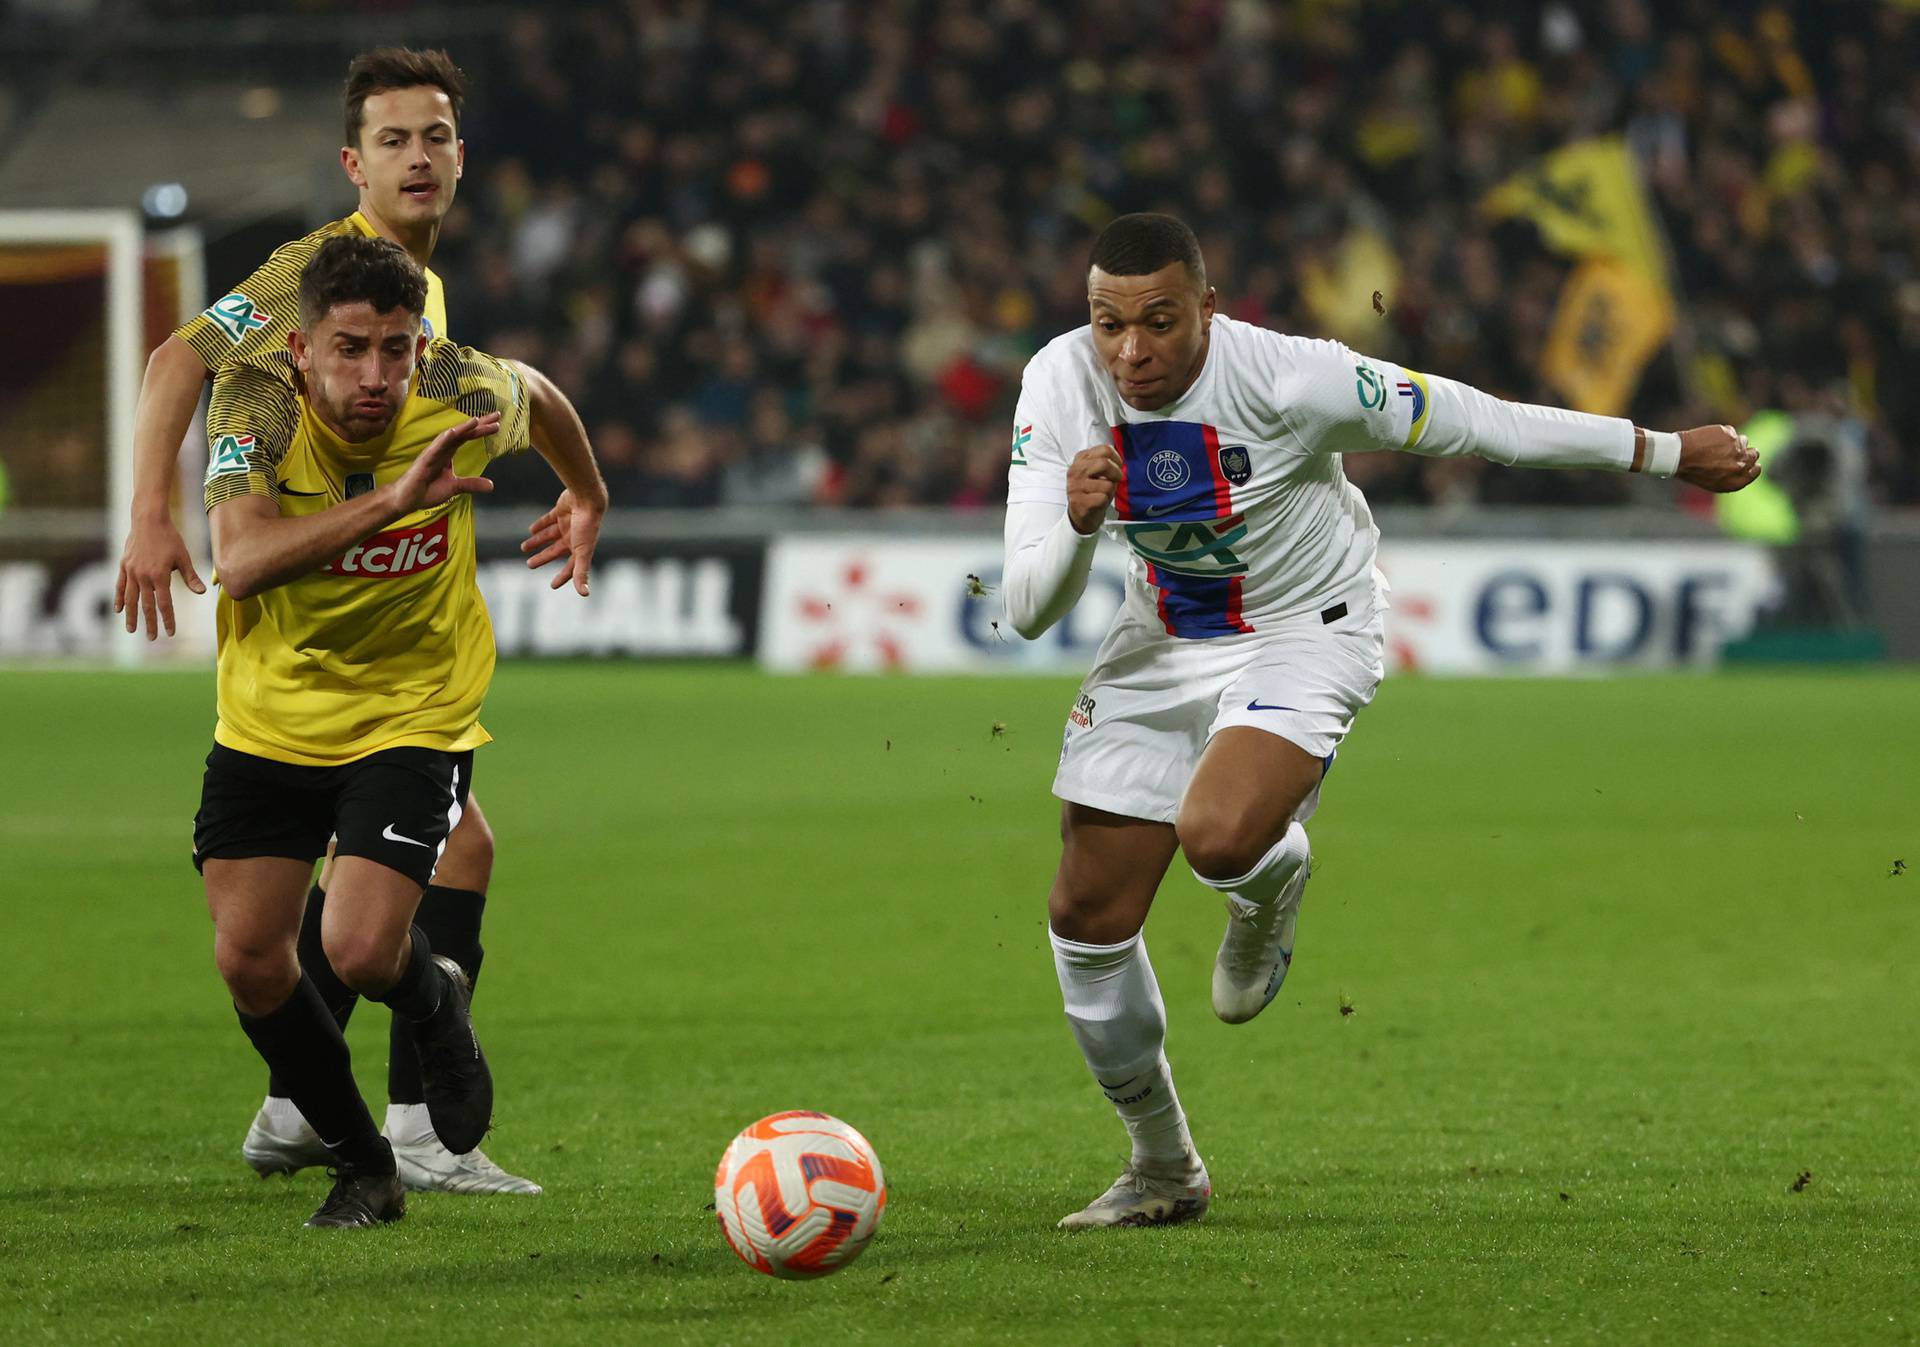 Coupe de France - Round of 32 - Pays de Cassel v Paris St Germain